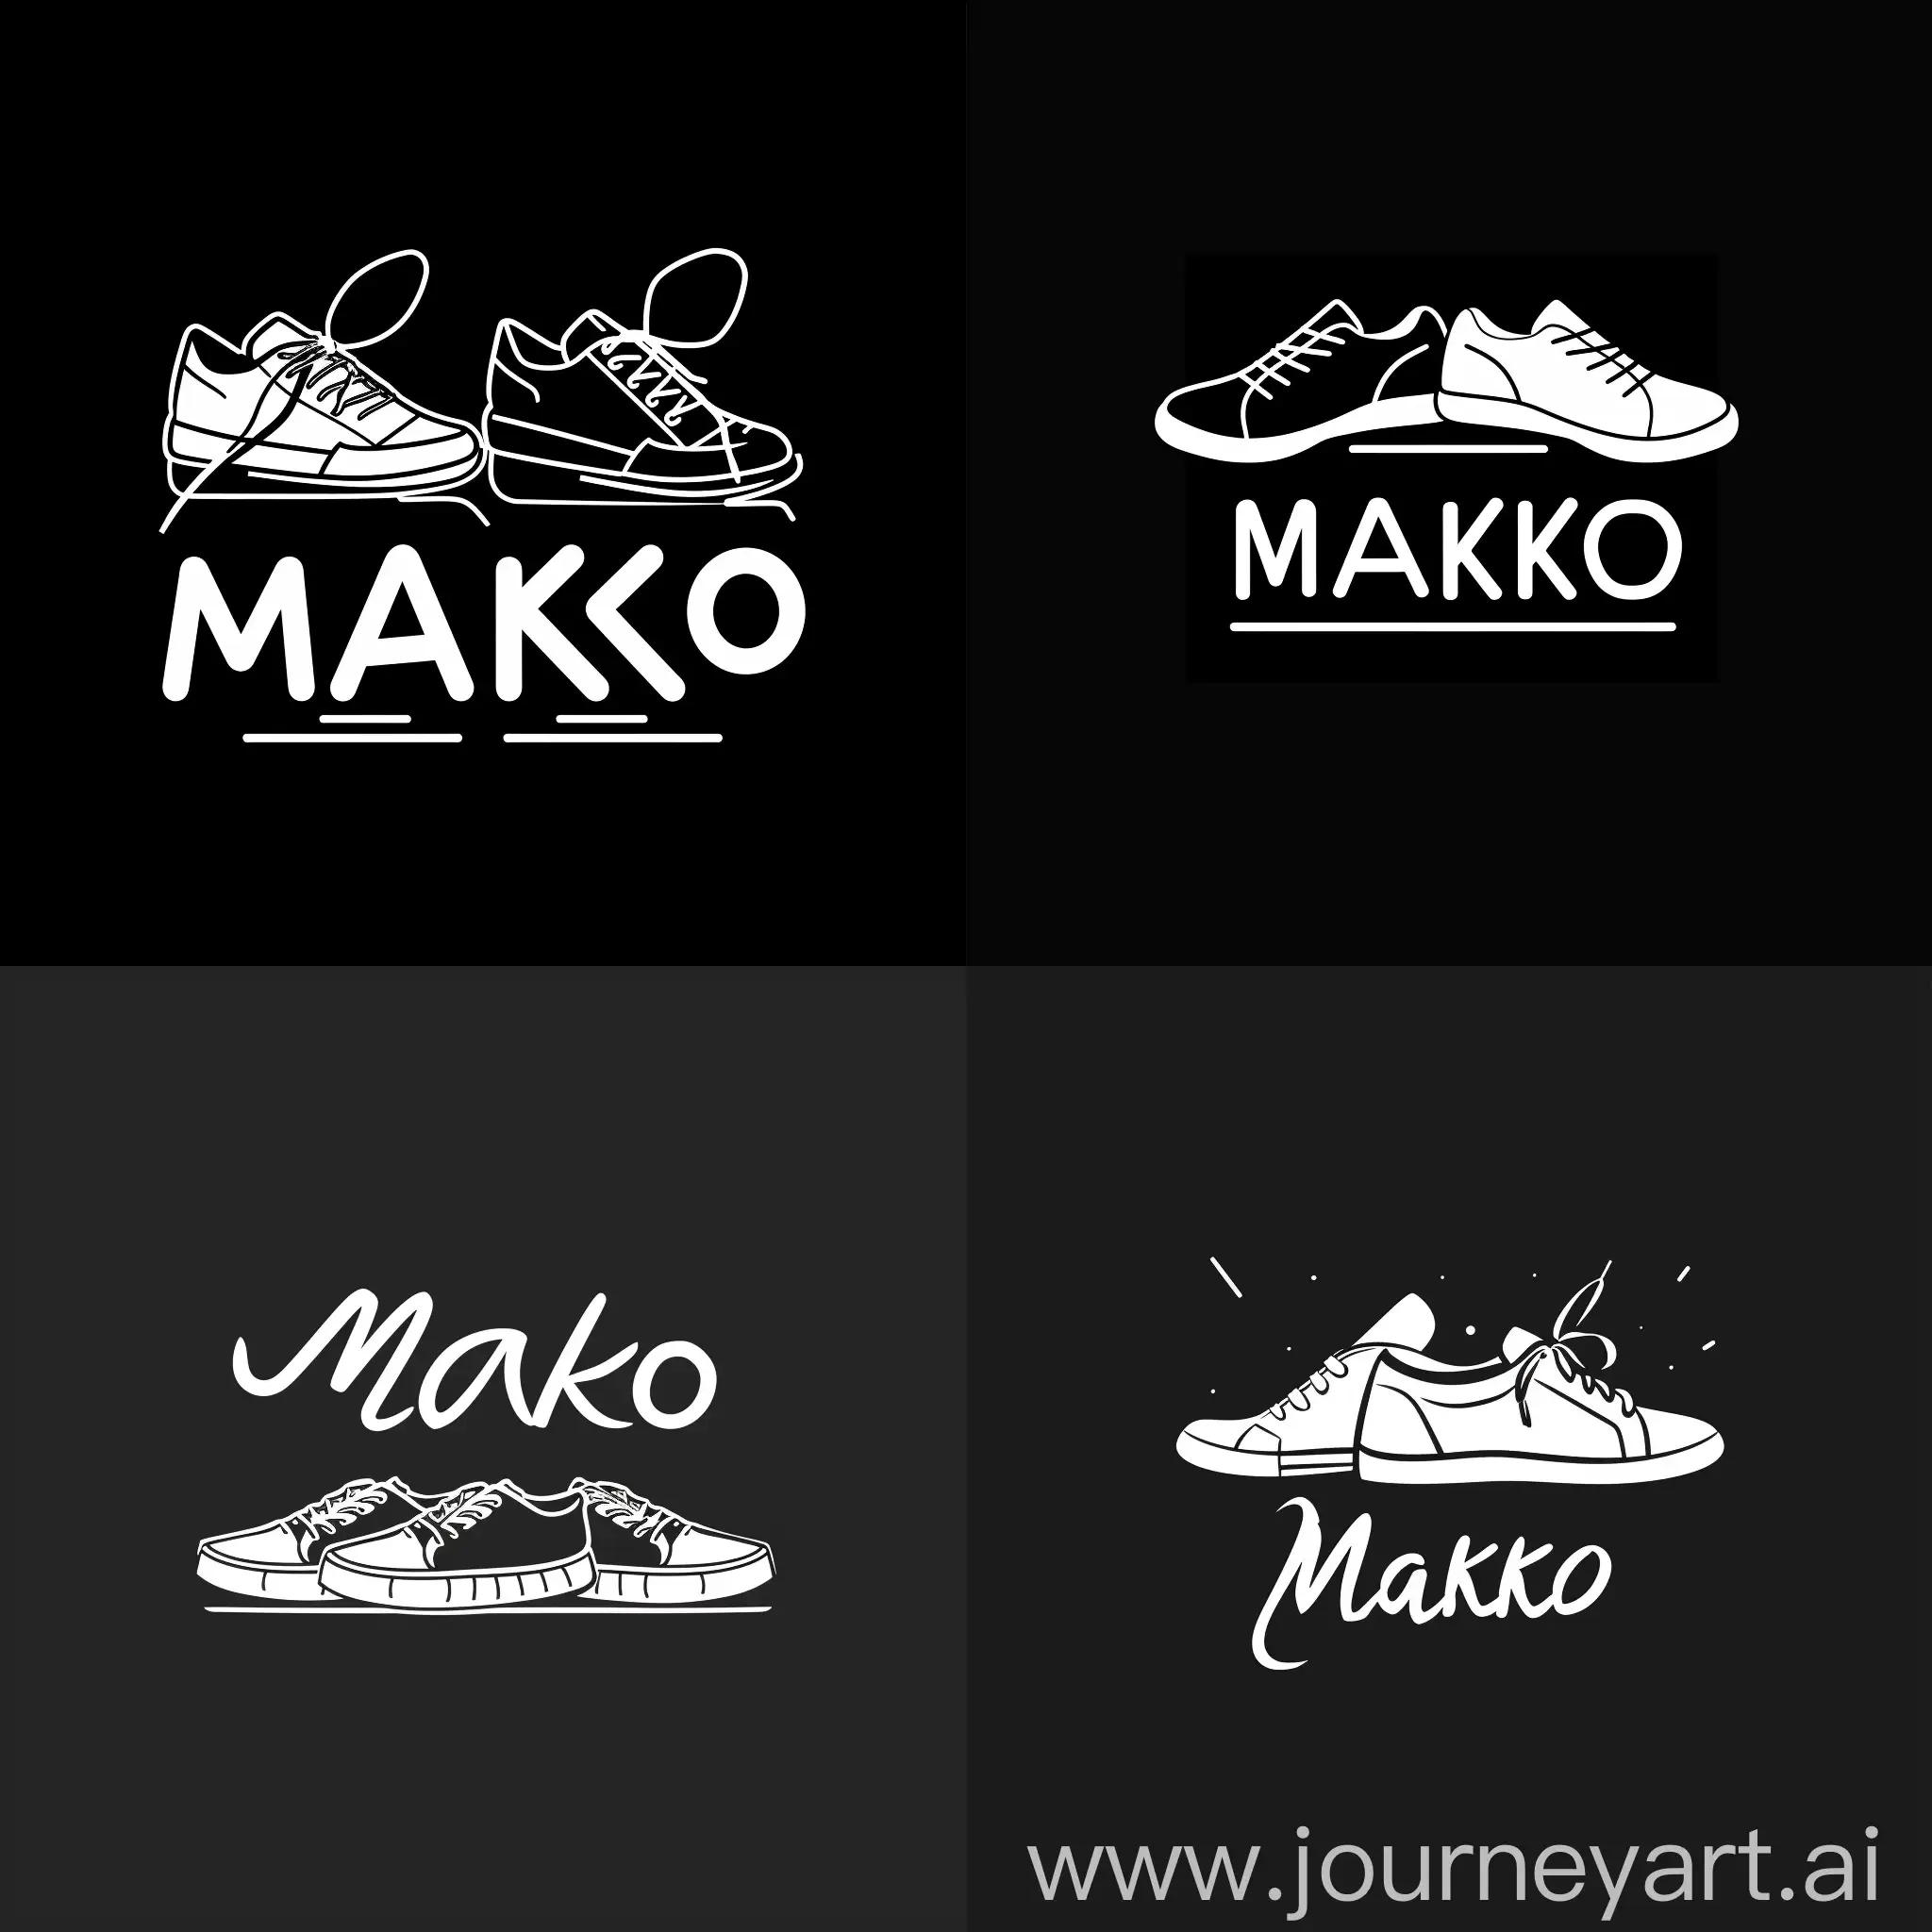 черно-белый логотип магазина женской обуви "Makko", изображены плоские кеды и туфли, минимализм, изящный, детализированный, UHD